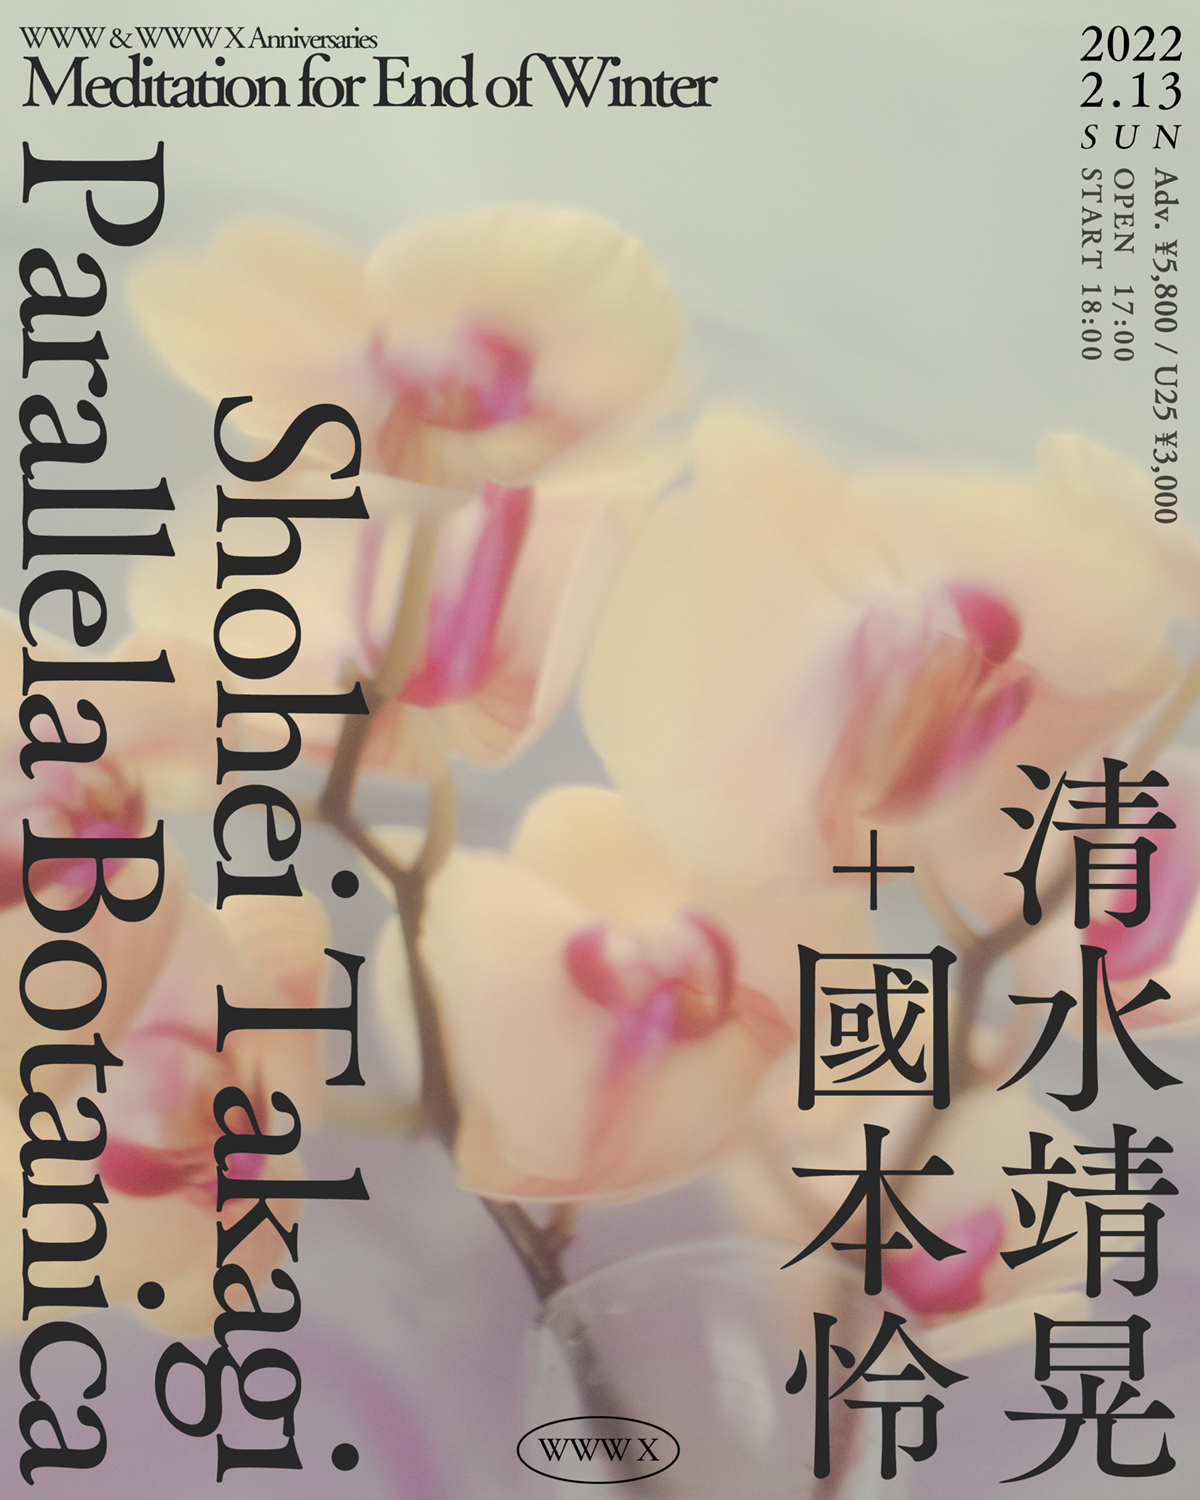 清水靖晃+國本怜 Yasuaki Shimizu+Ray Kunimoto / Shohei Takagi Parallela Botanica